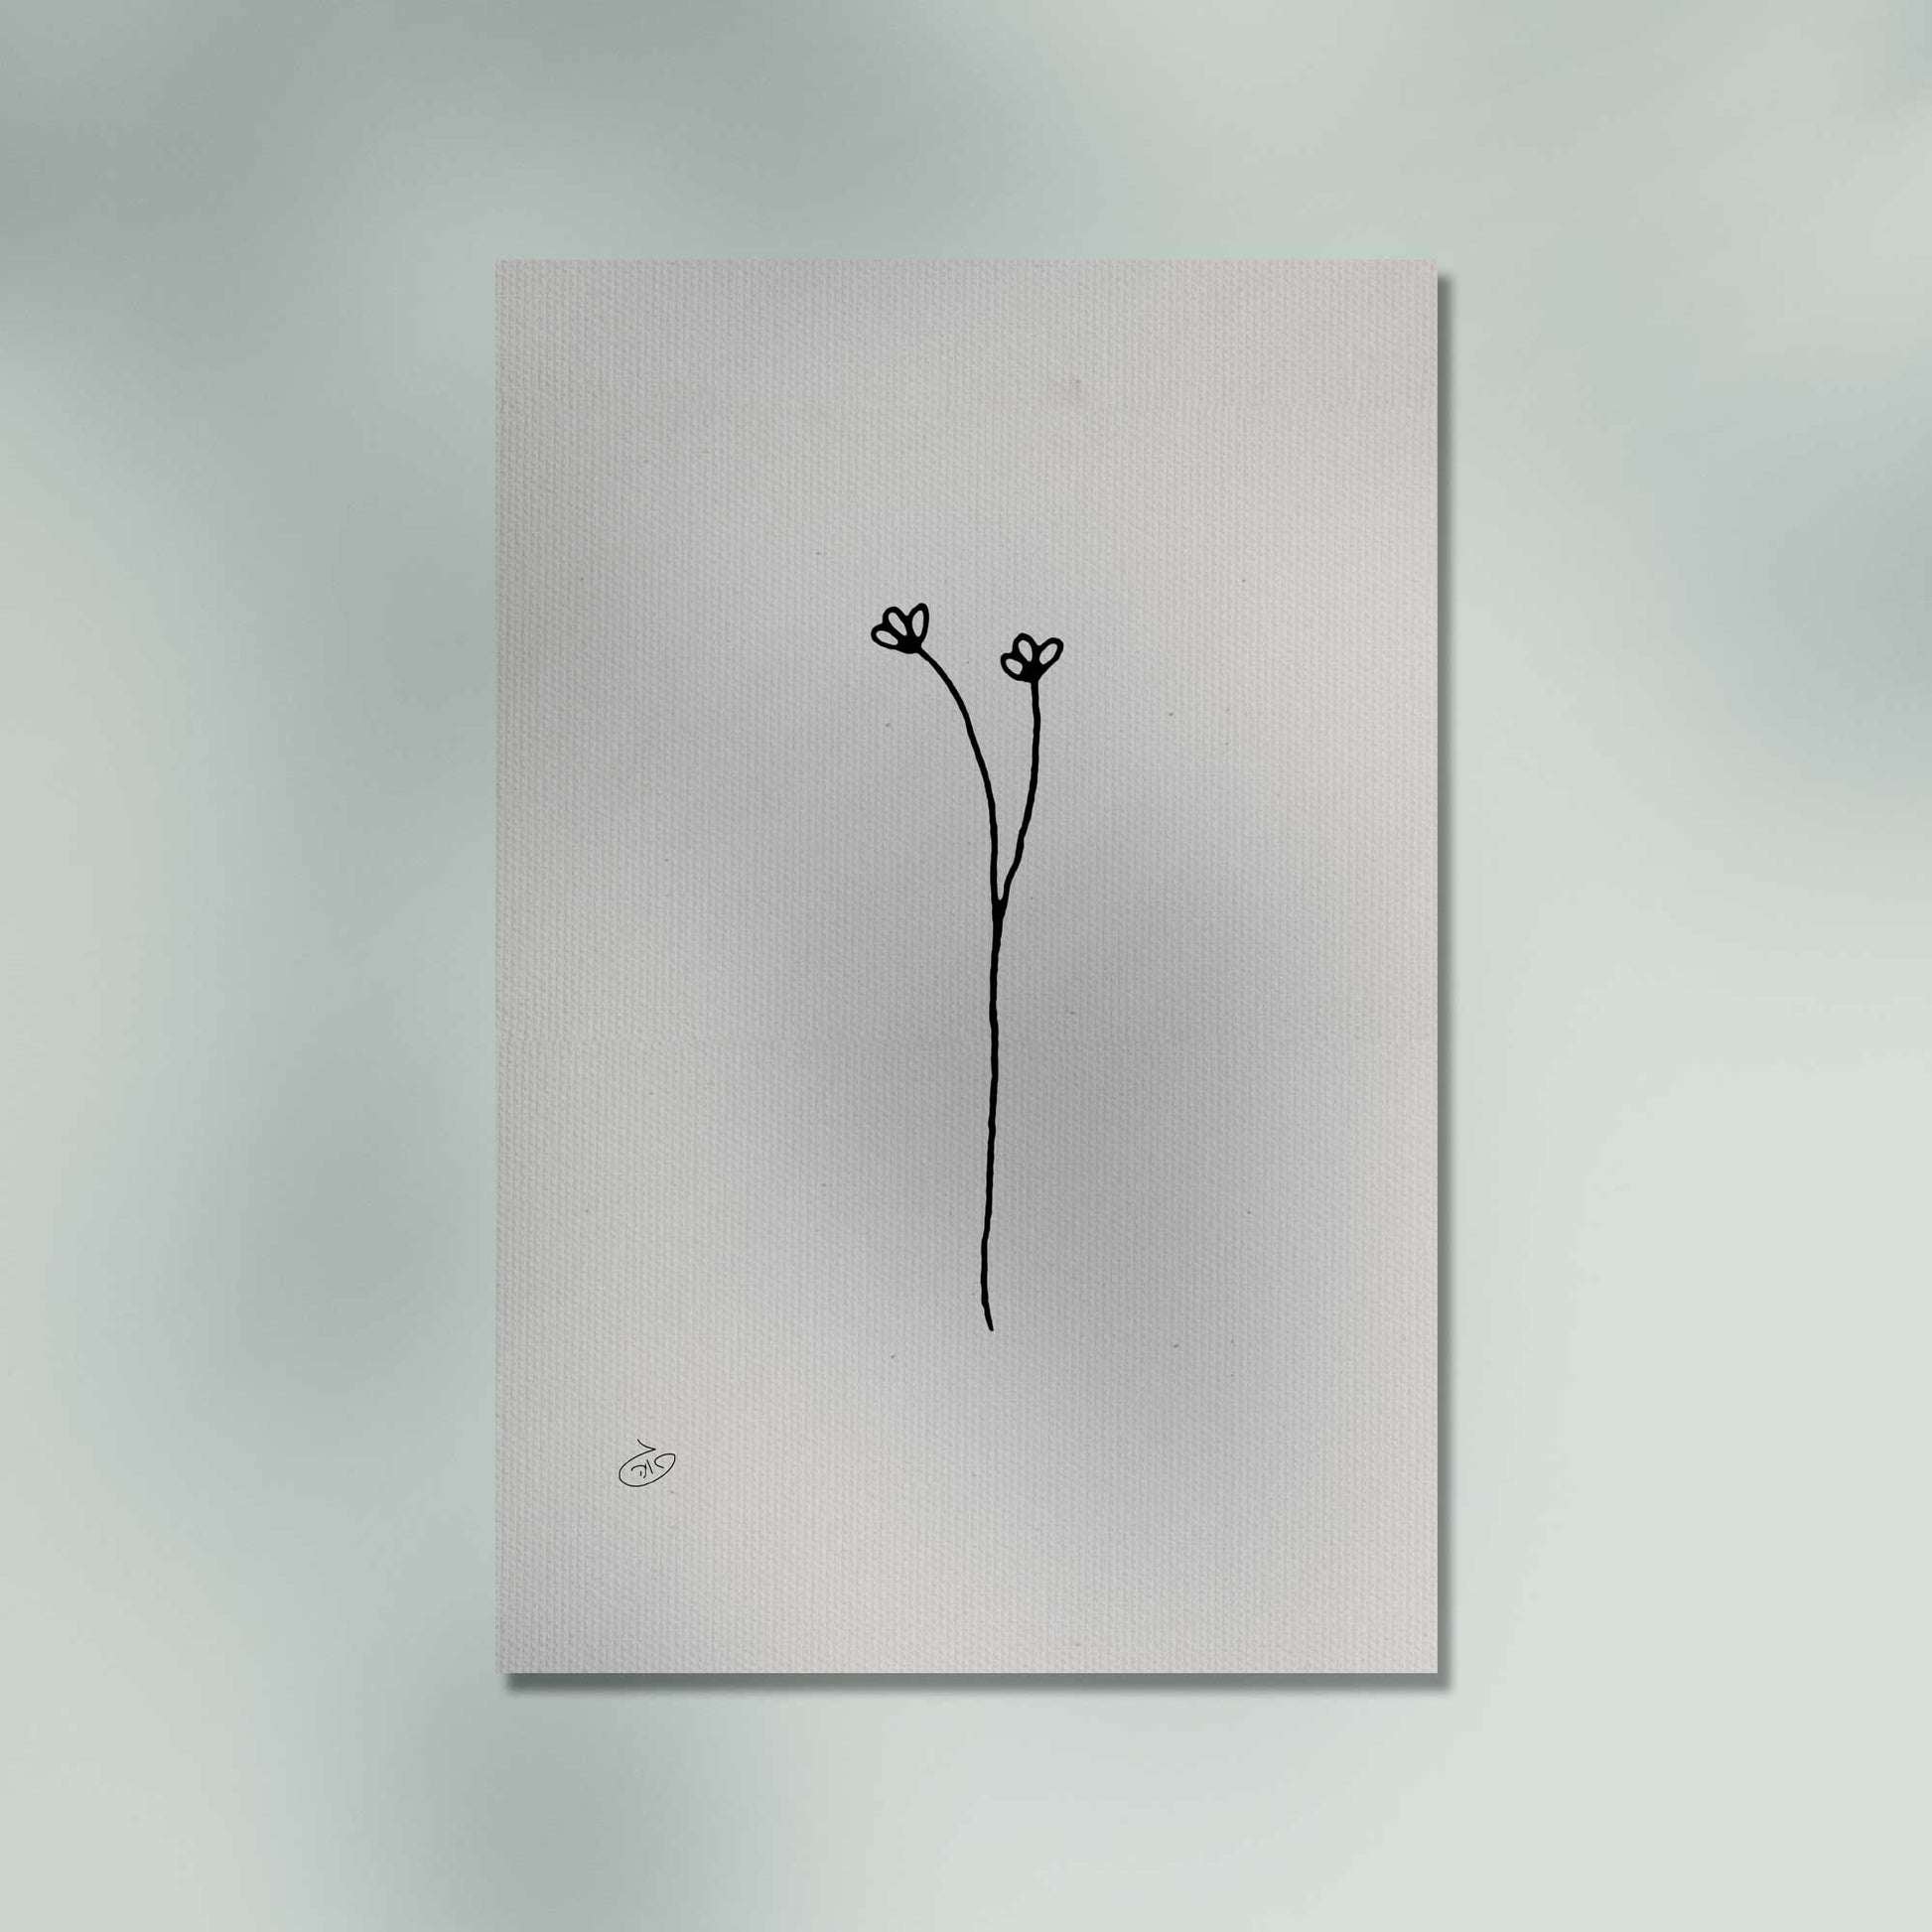 פוסטר One Line Flower - Olivia Poster ציור מקורי של גאיה המקדם את המודעות לאלימות בין בני זוג בכלל וכלפי נשים בפרט